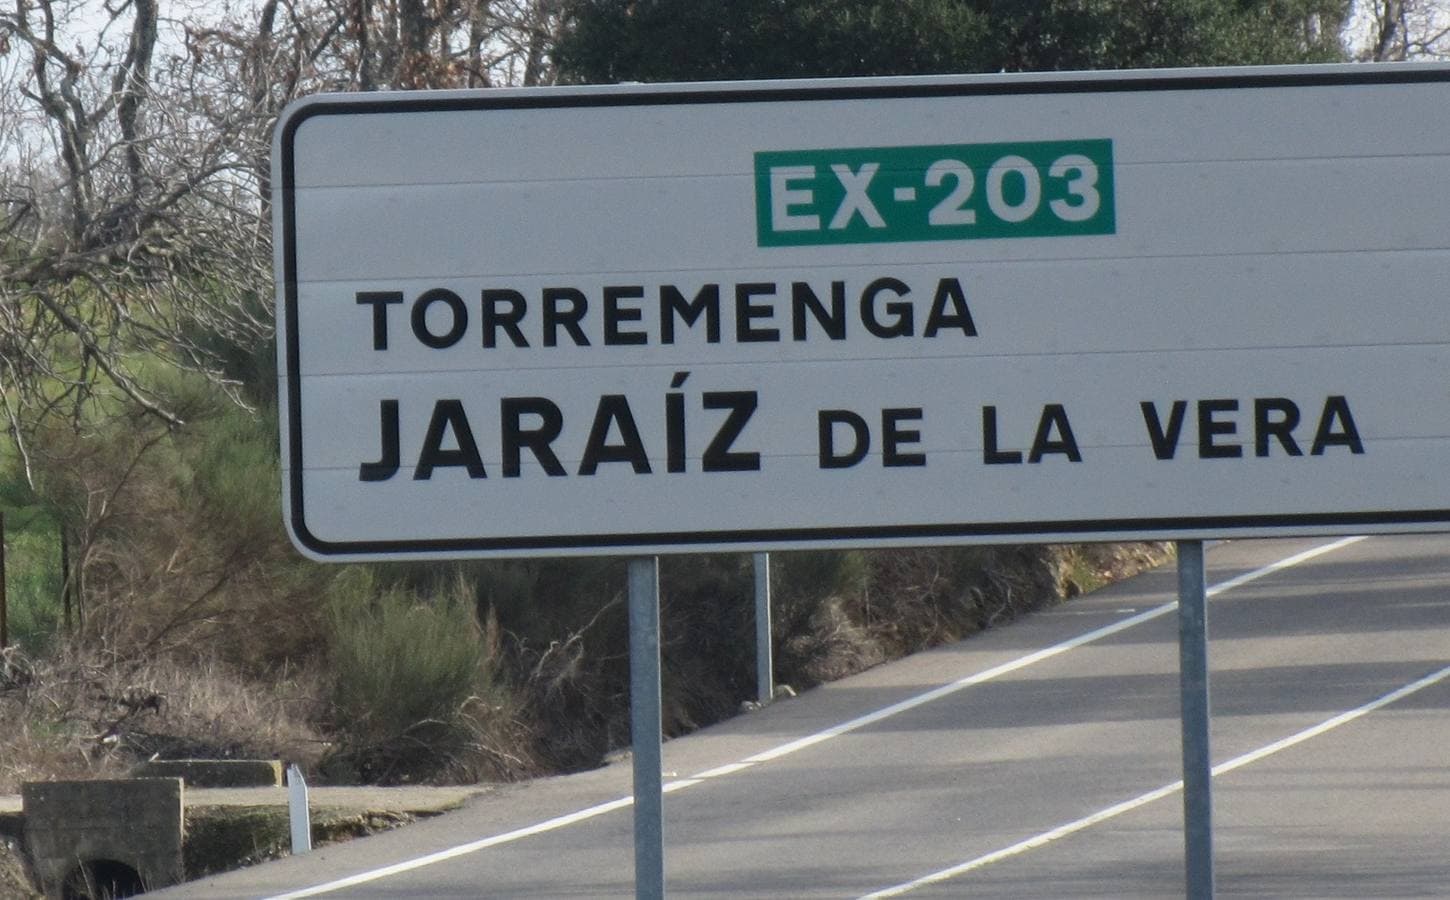 Carretera Ex-203, dirección a Torremenga. 